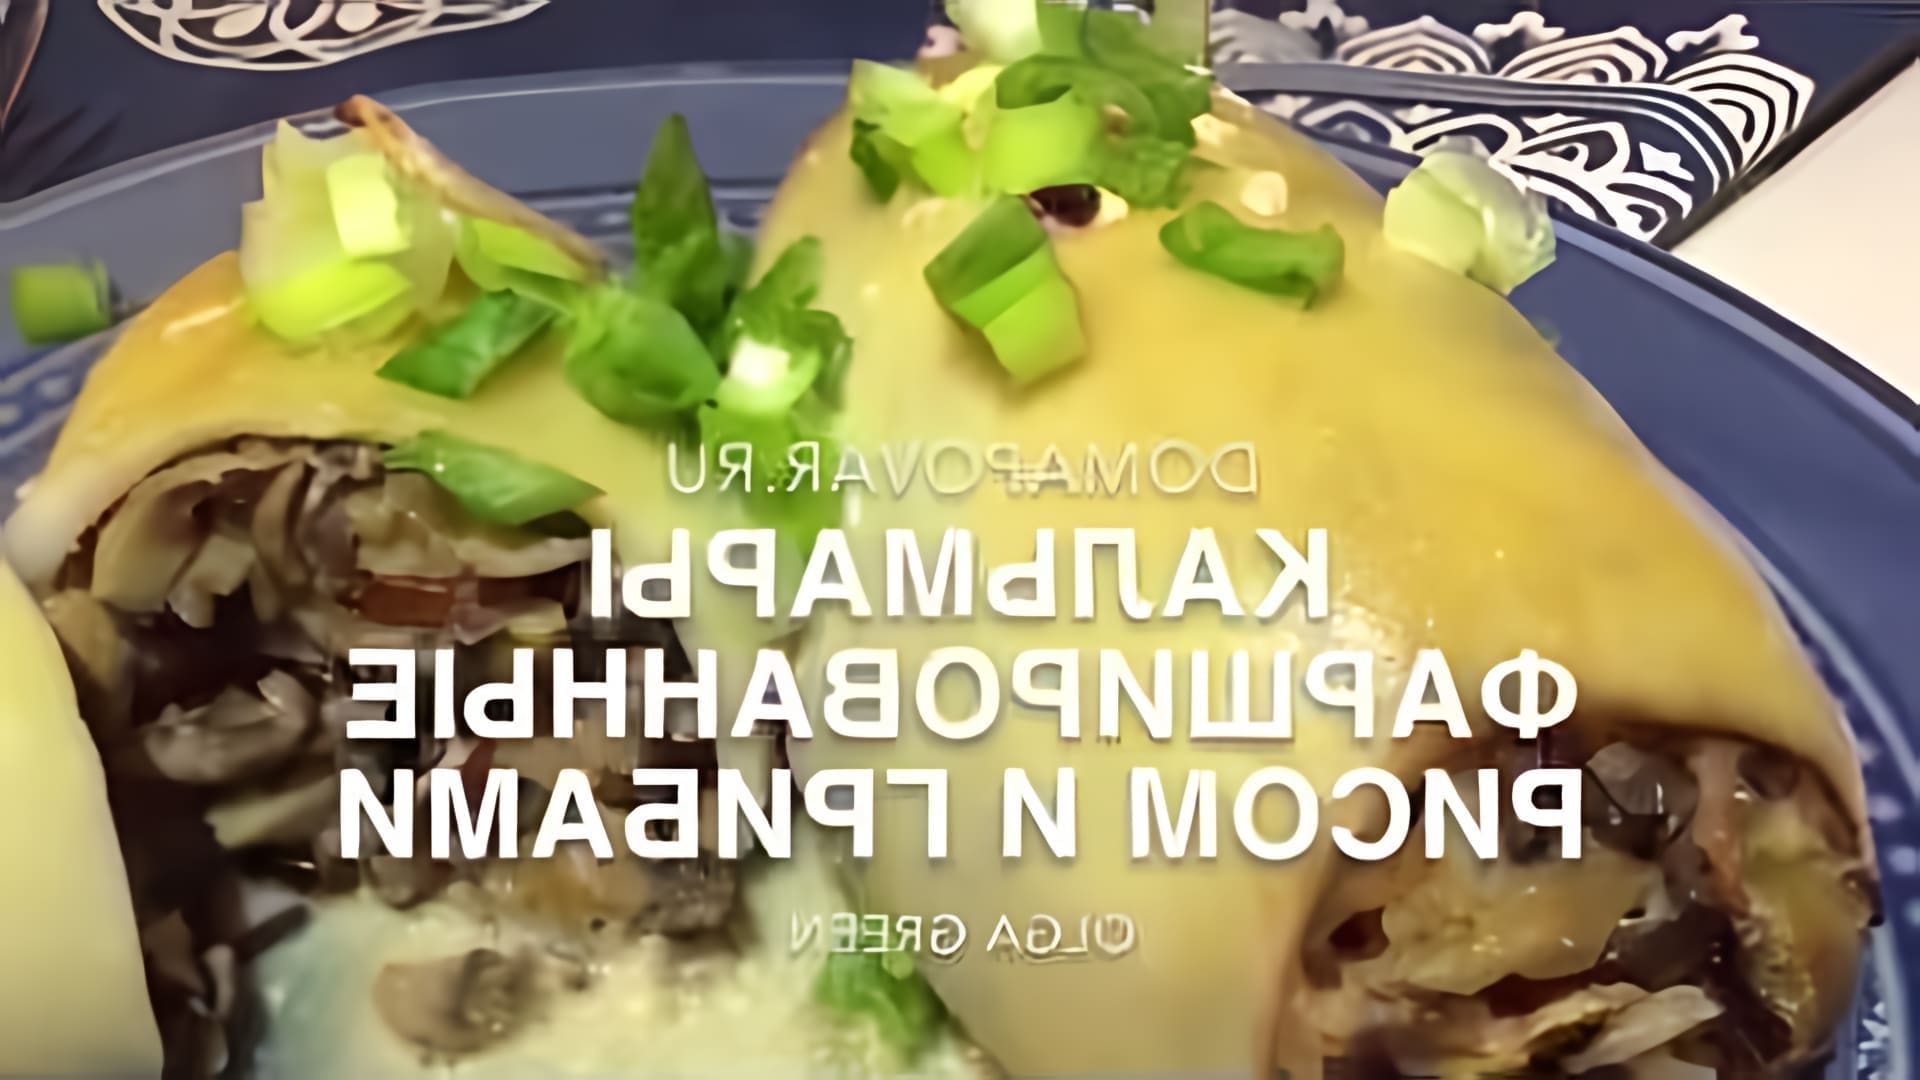 В этом видео-ролике вы увидите, как приготовить вкусное и оригинальное блюдо - кальмары, фаршированные грибами и рисом